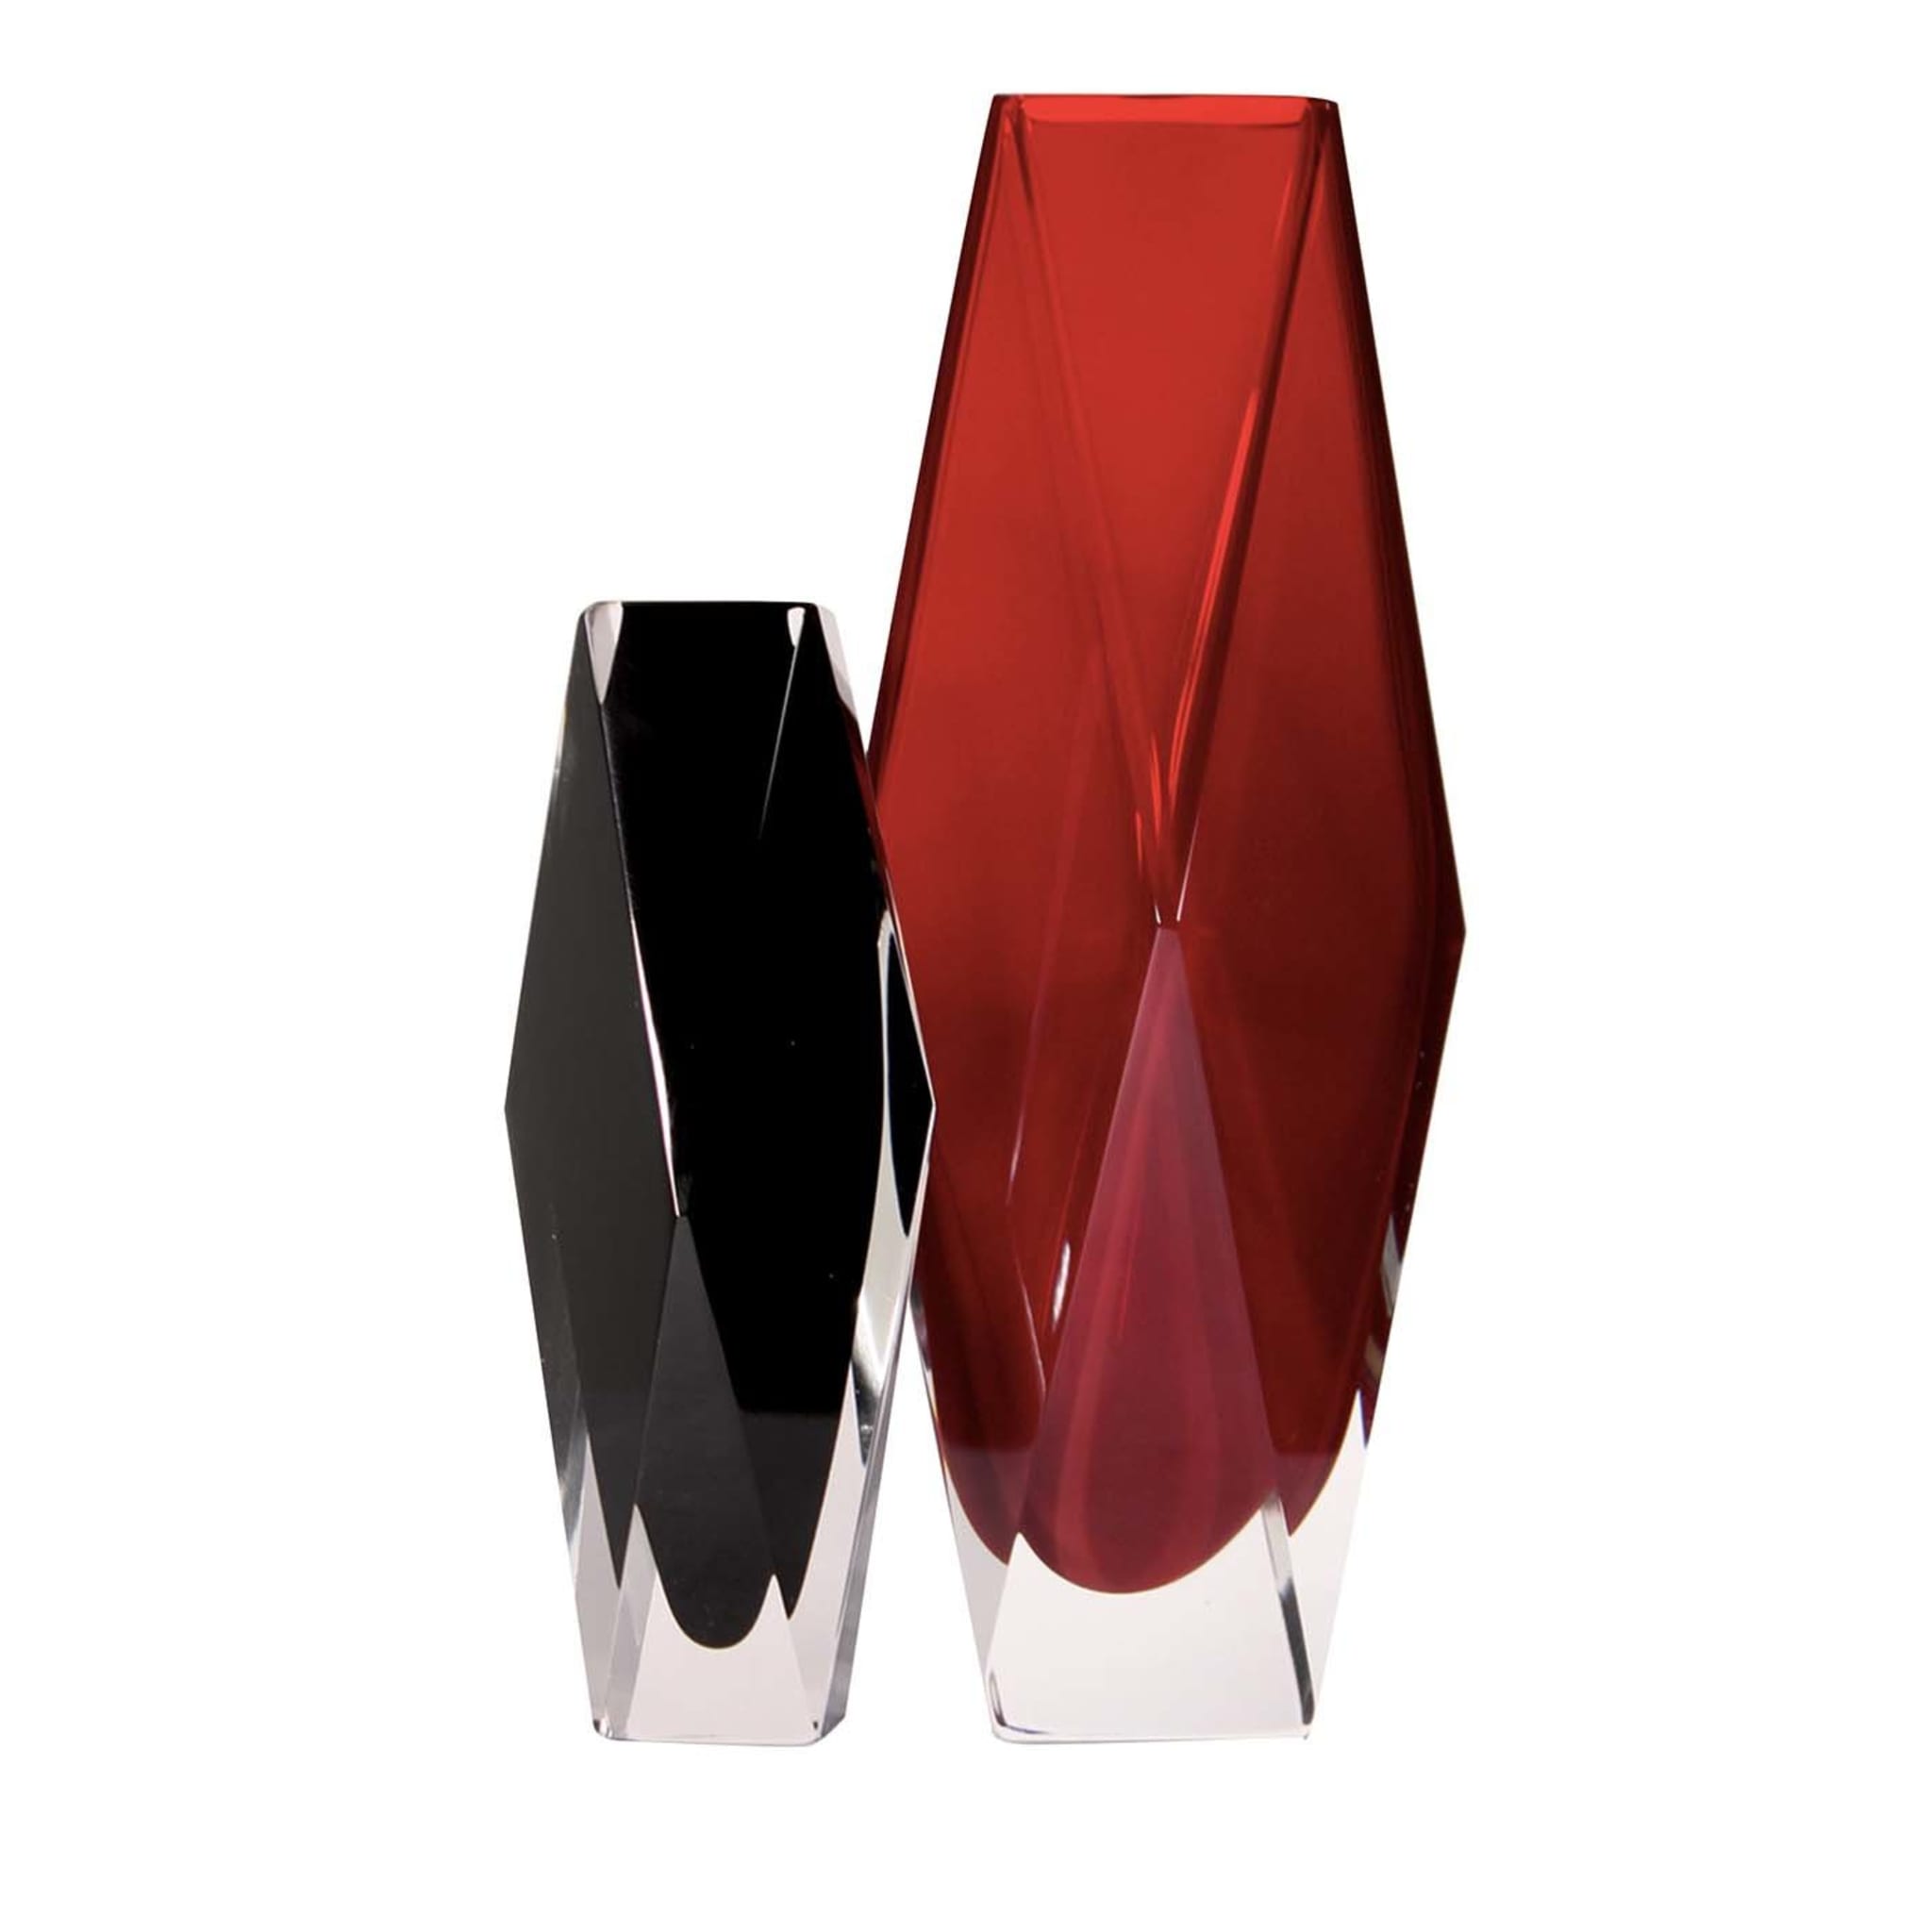 Gotham Set aus zwei Vasen in Schwarz und Rot - Hauptansicht